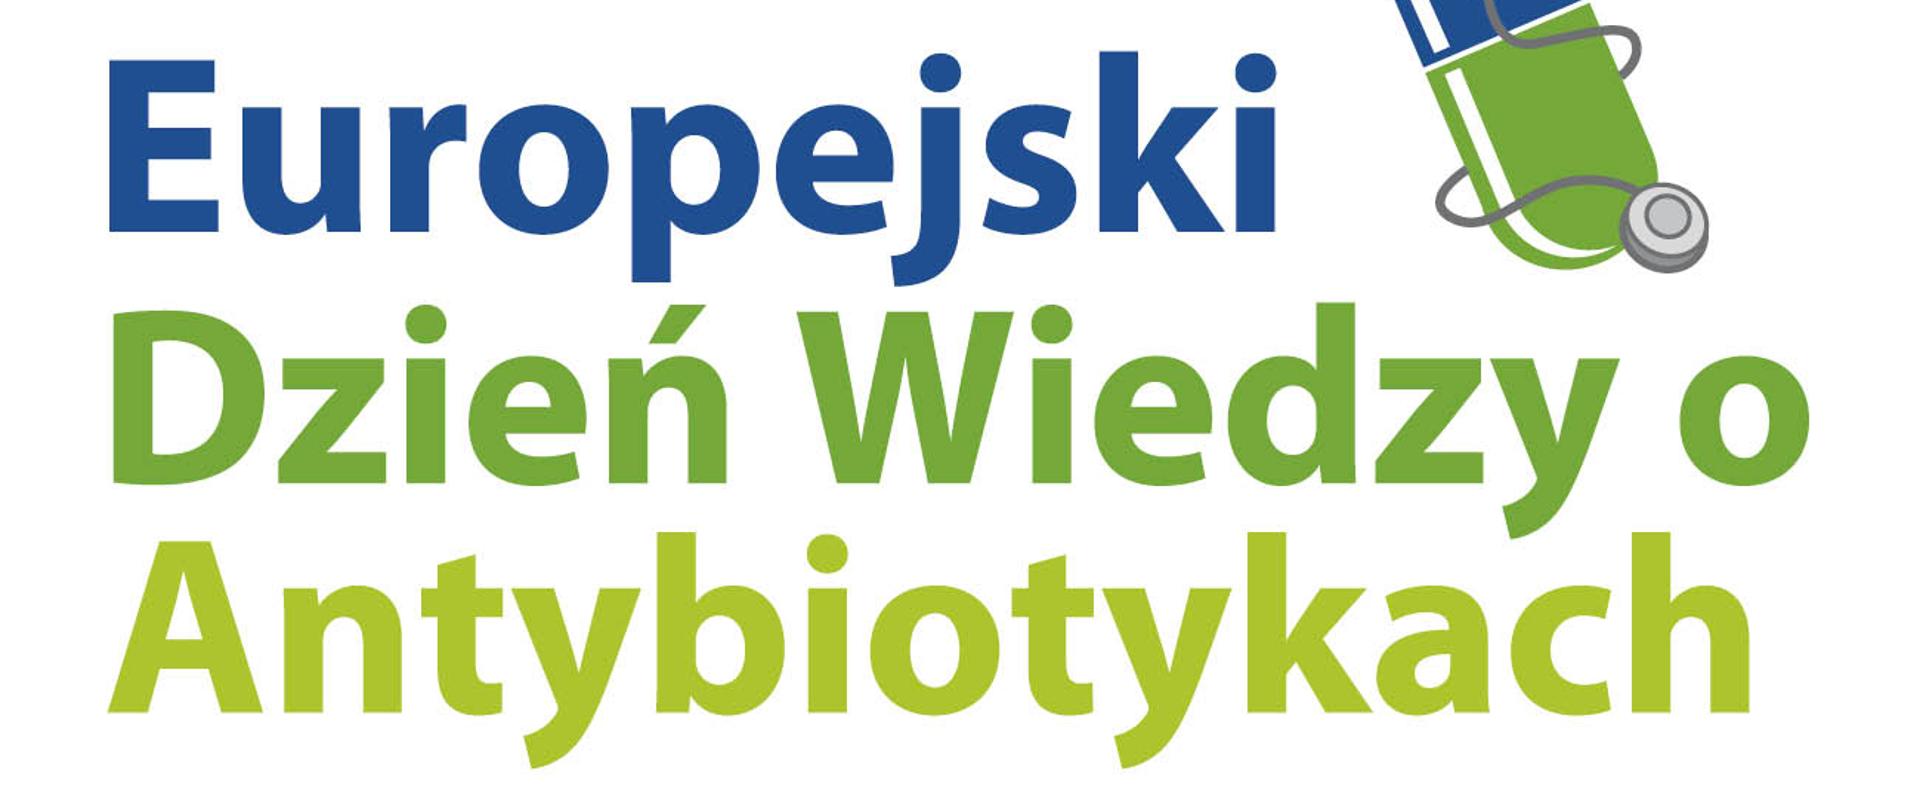 Logo i napis 18 listopada Europejski dzień wiedzy o antybiotykach